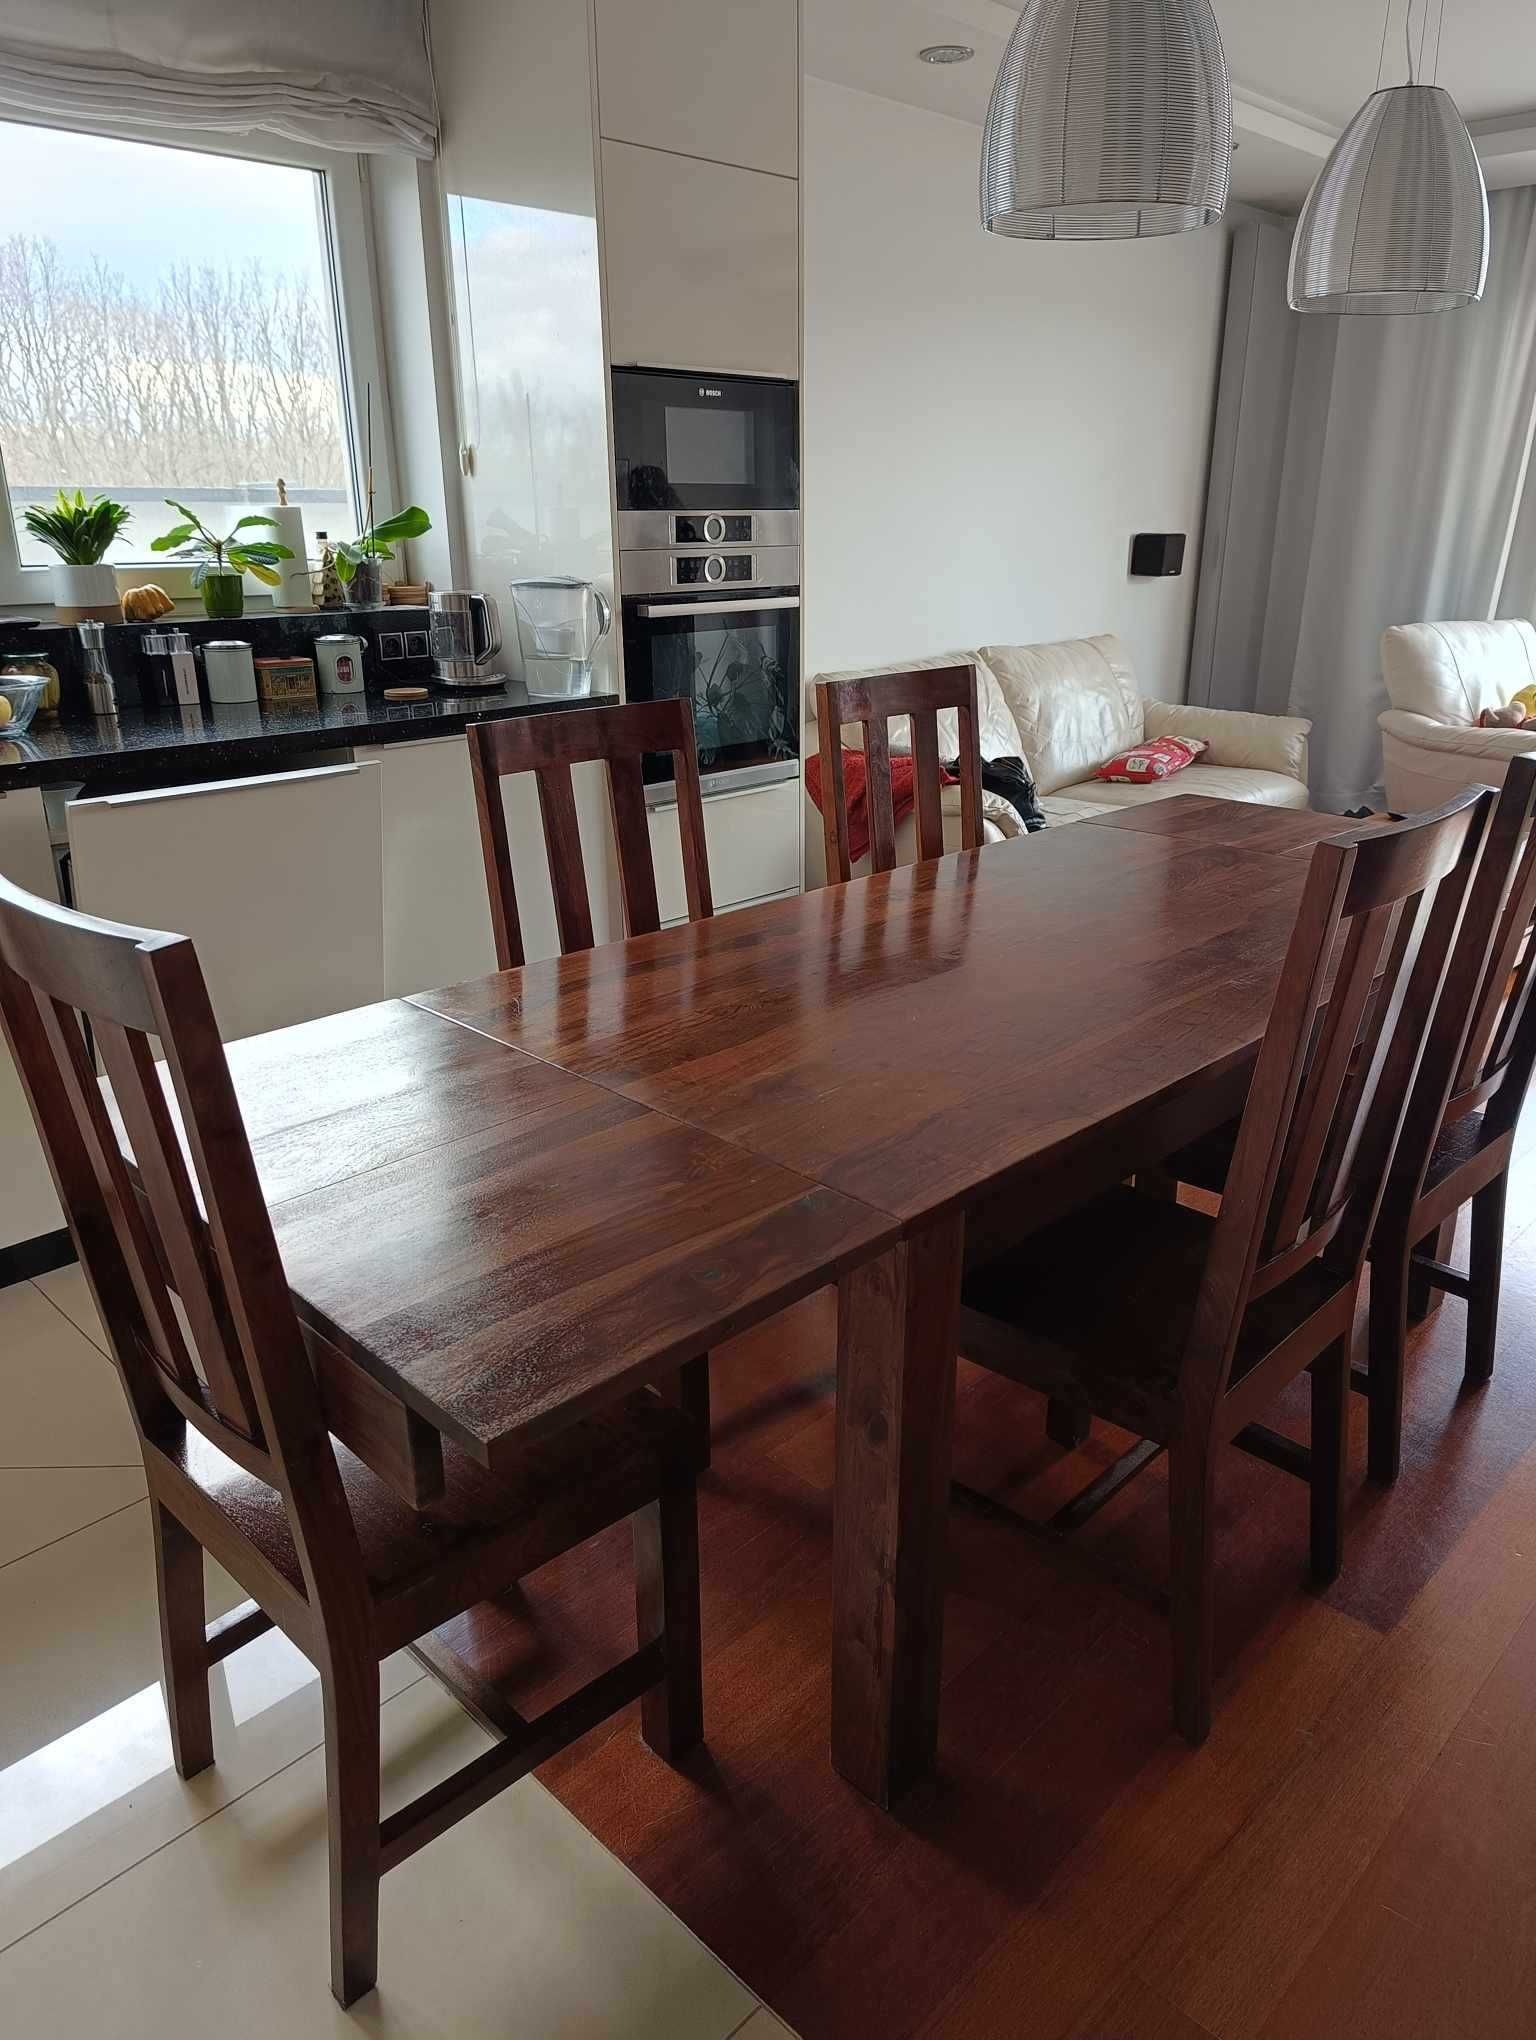 Duży rodzinny stół drewniany rozkładany z 6 krzesłami.